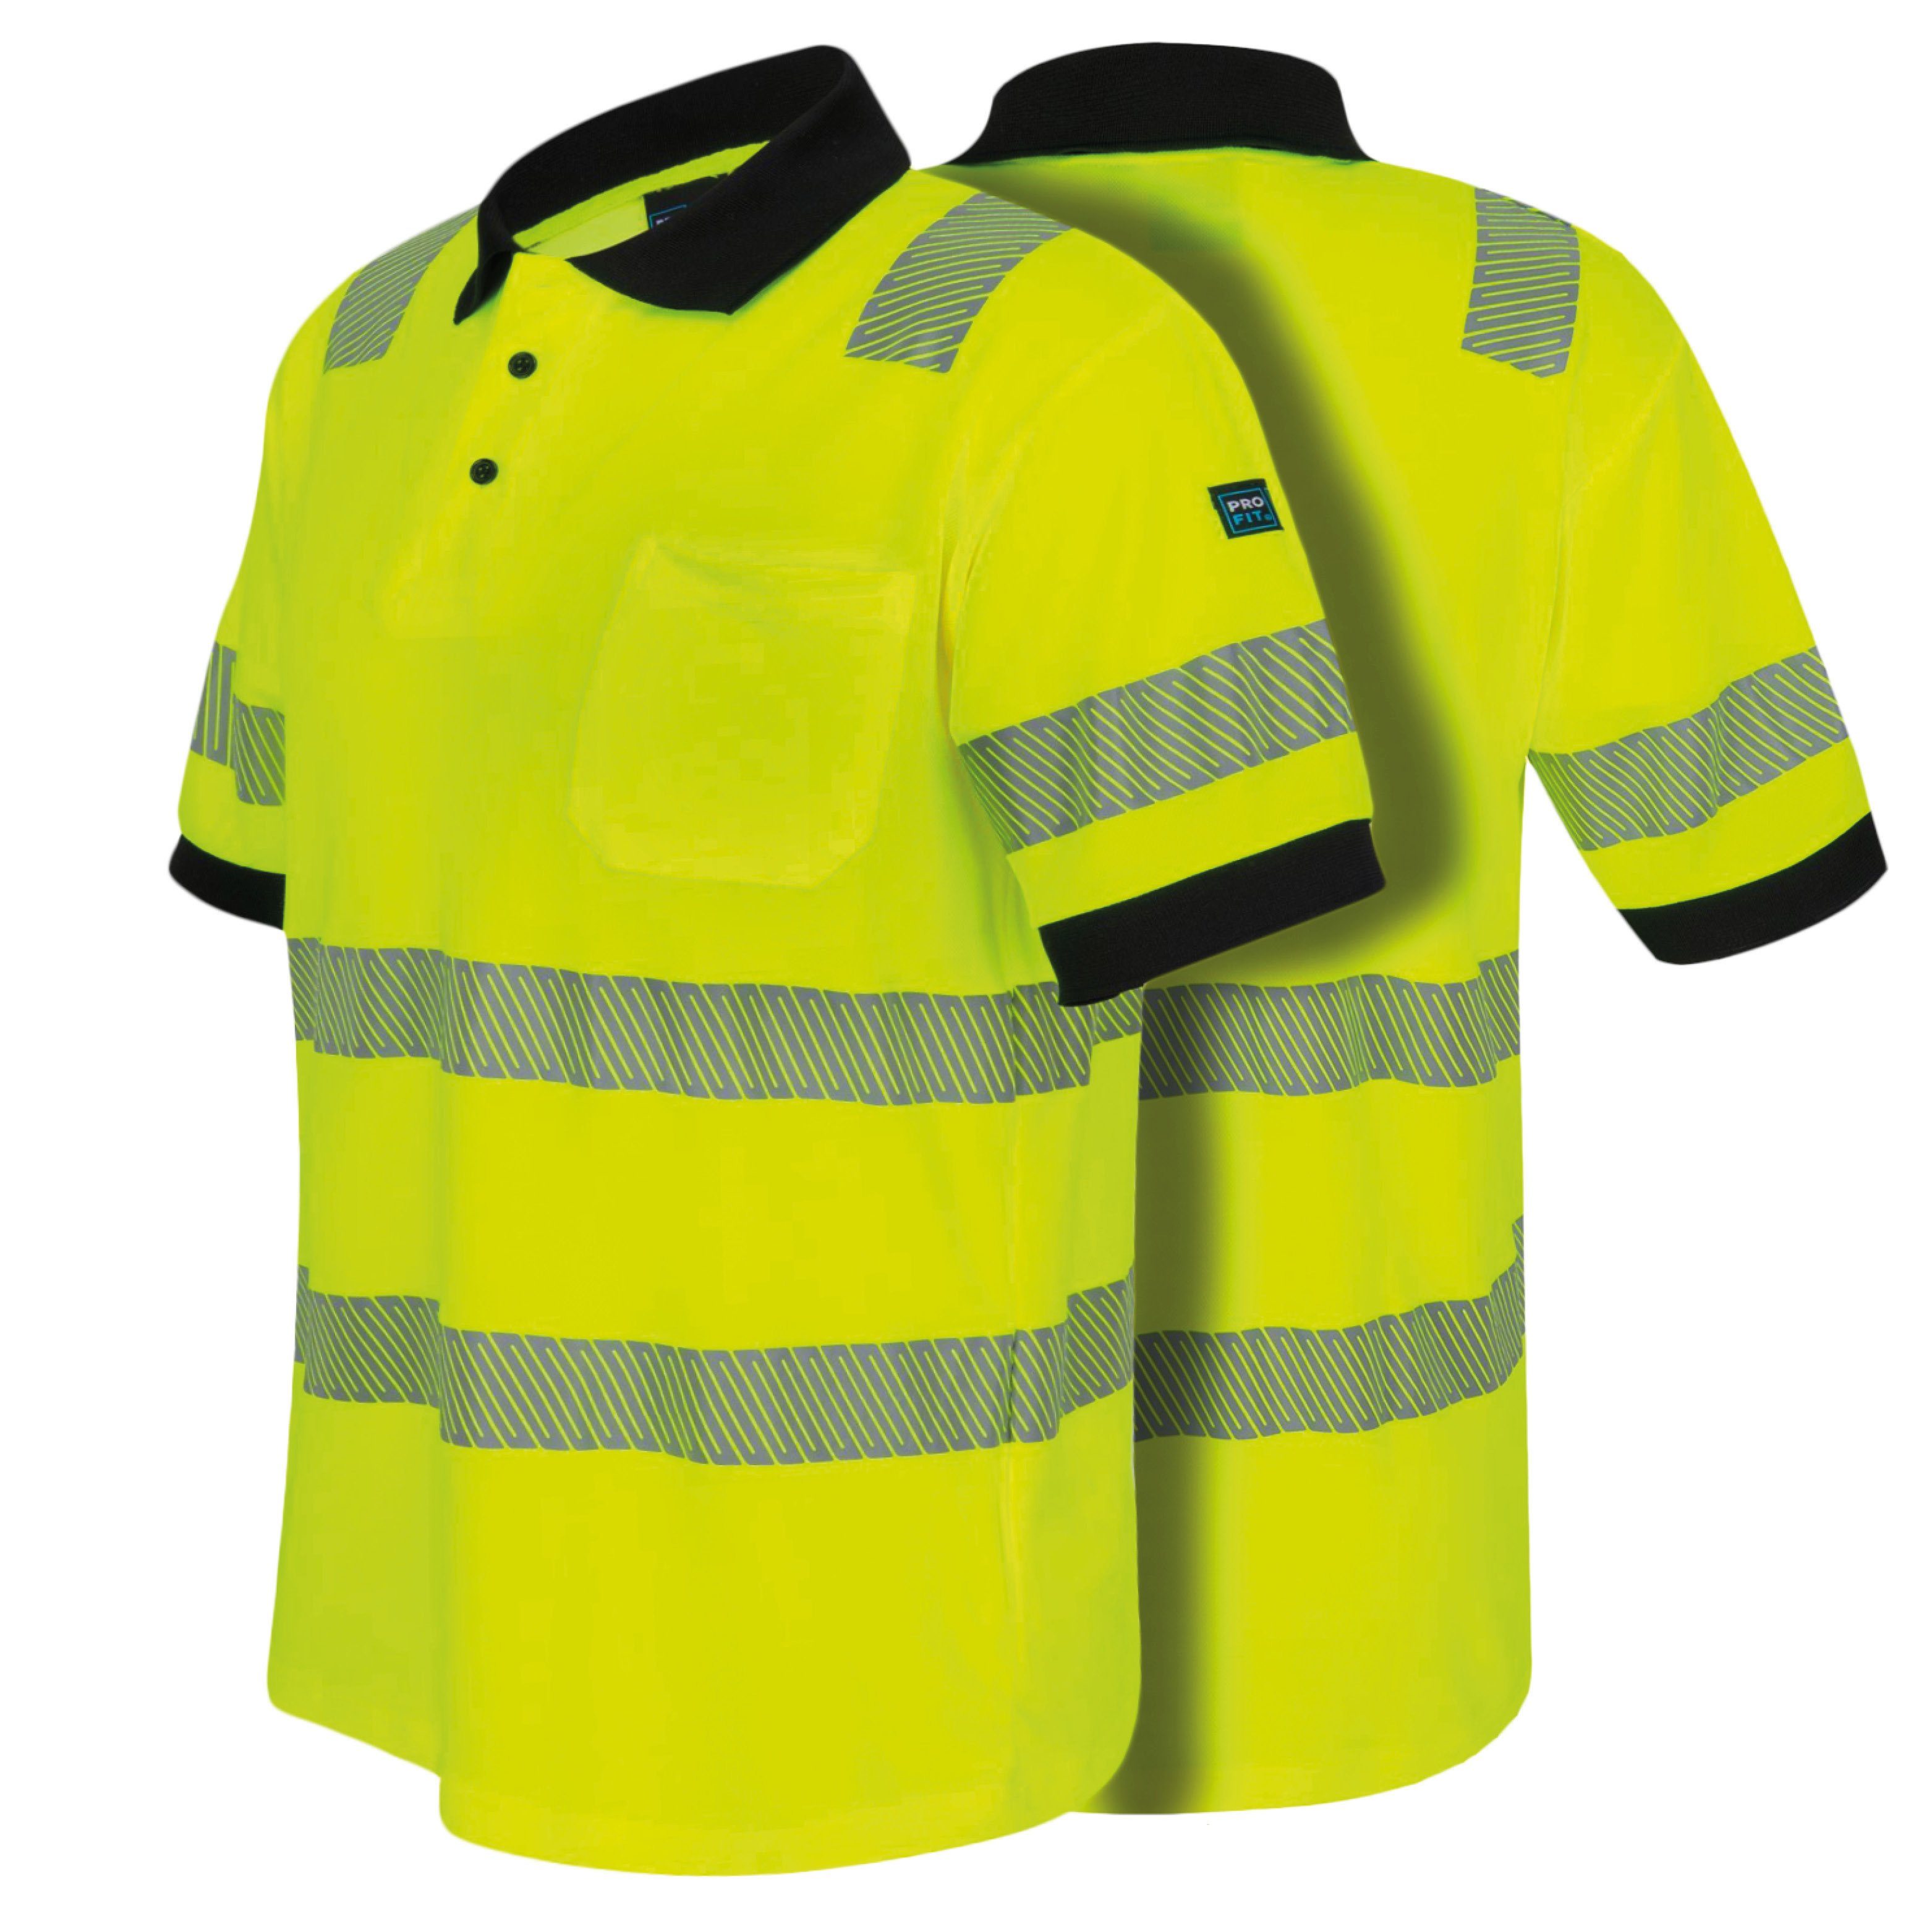 PRO FIT by Fitzner Poloshirt Warnschutz Neon Gelb - Grau, (1, Stück) Warnschutzkleidung, Weich, Komfortabel, Hohe Sichtbarkeit